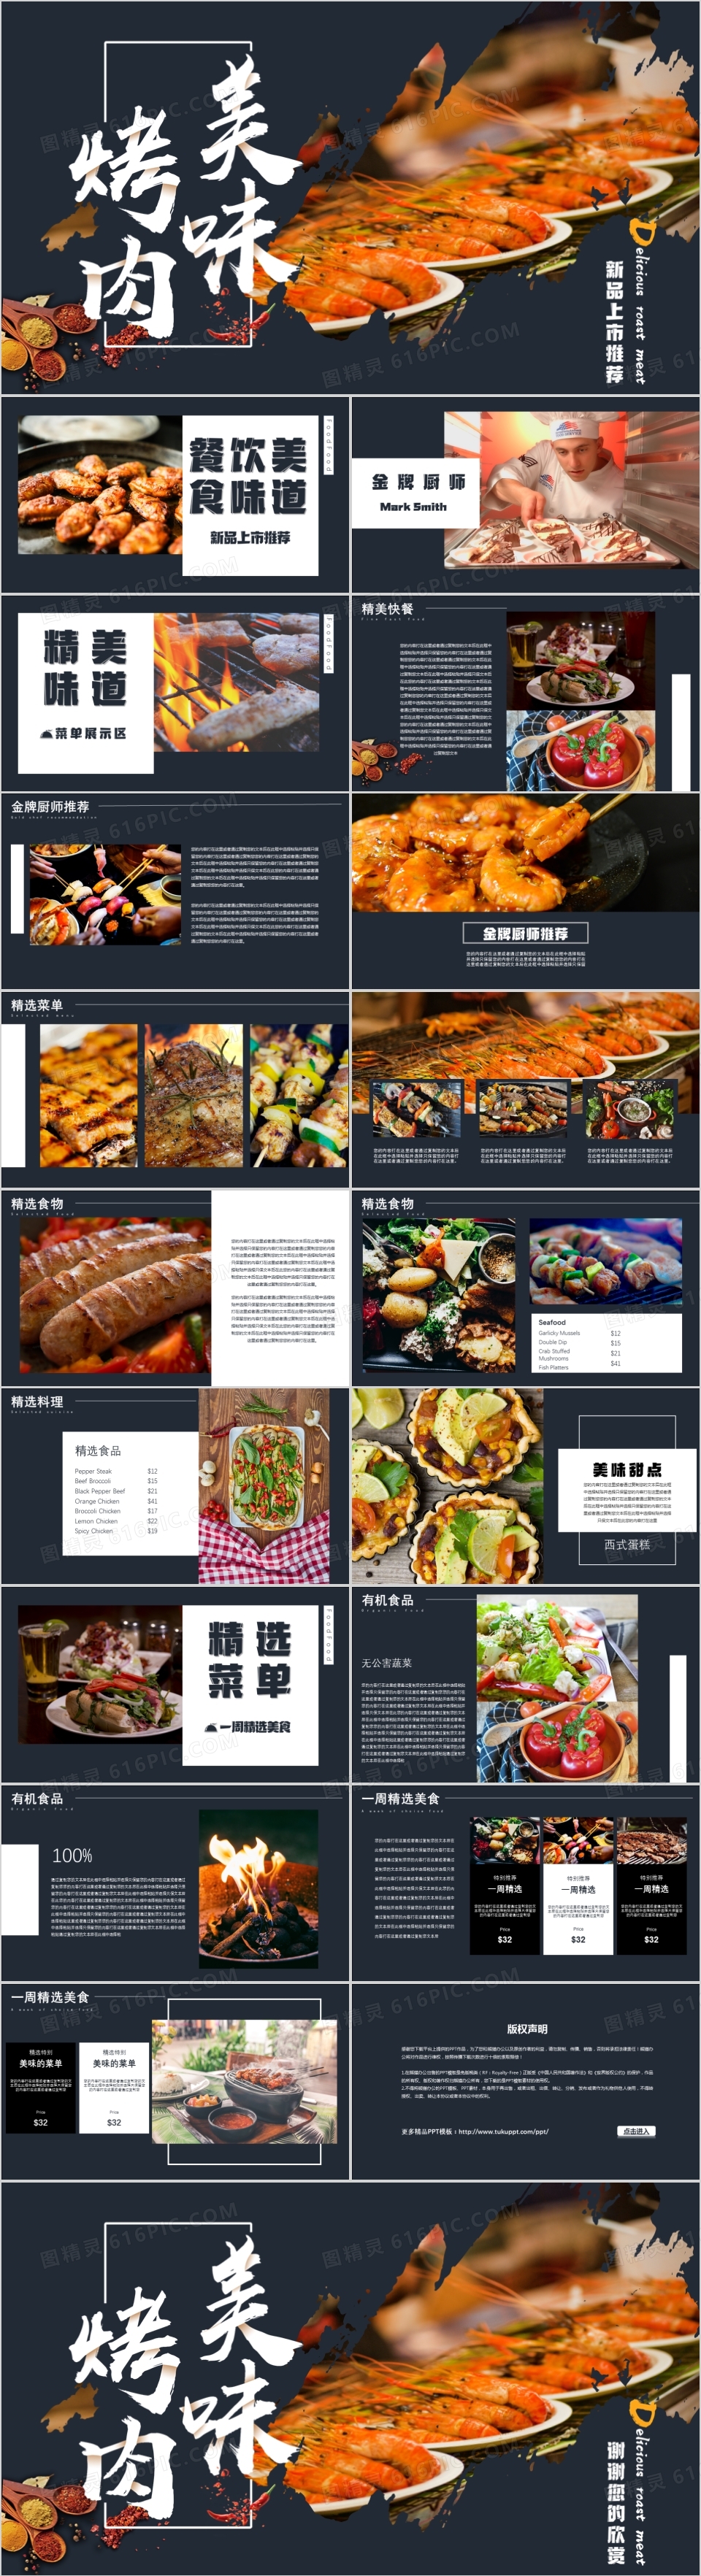 摄影配图创意通用美食相册PPT模板